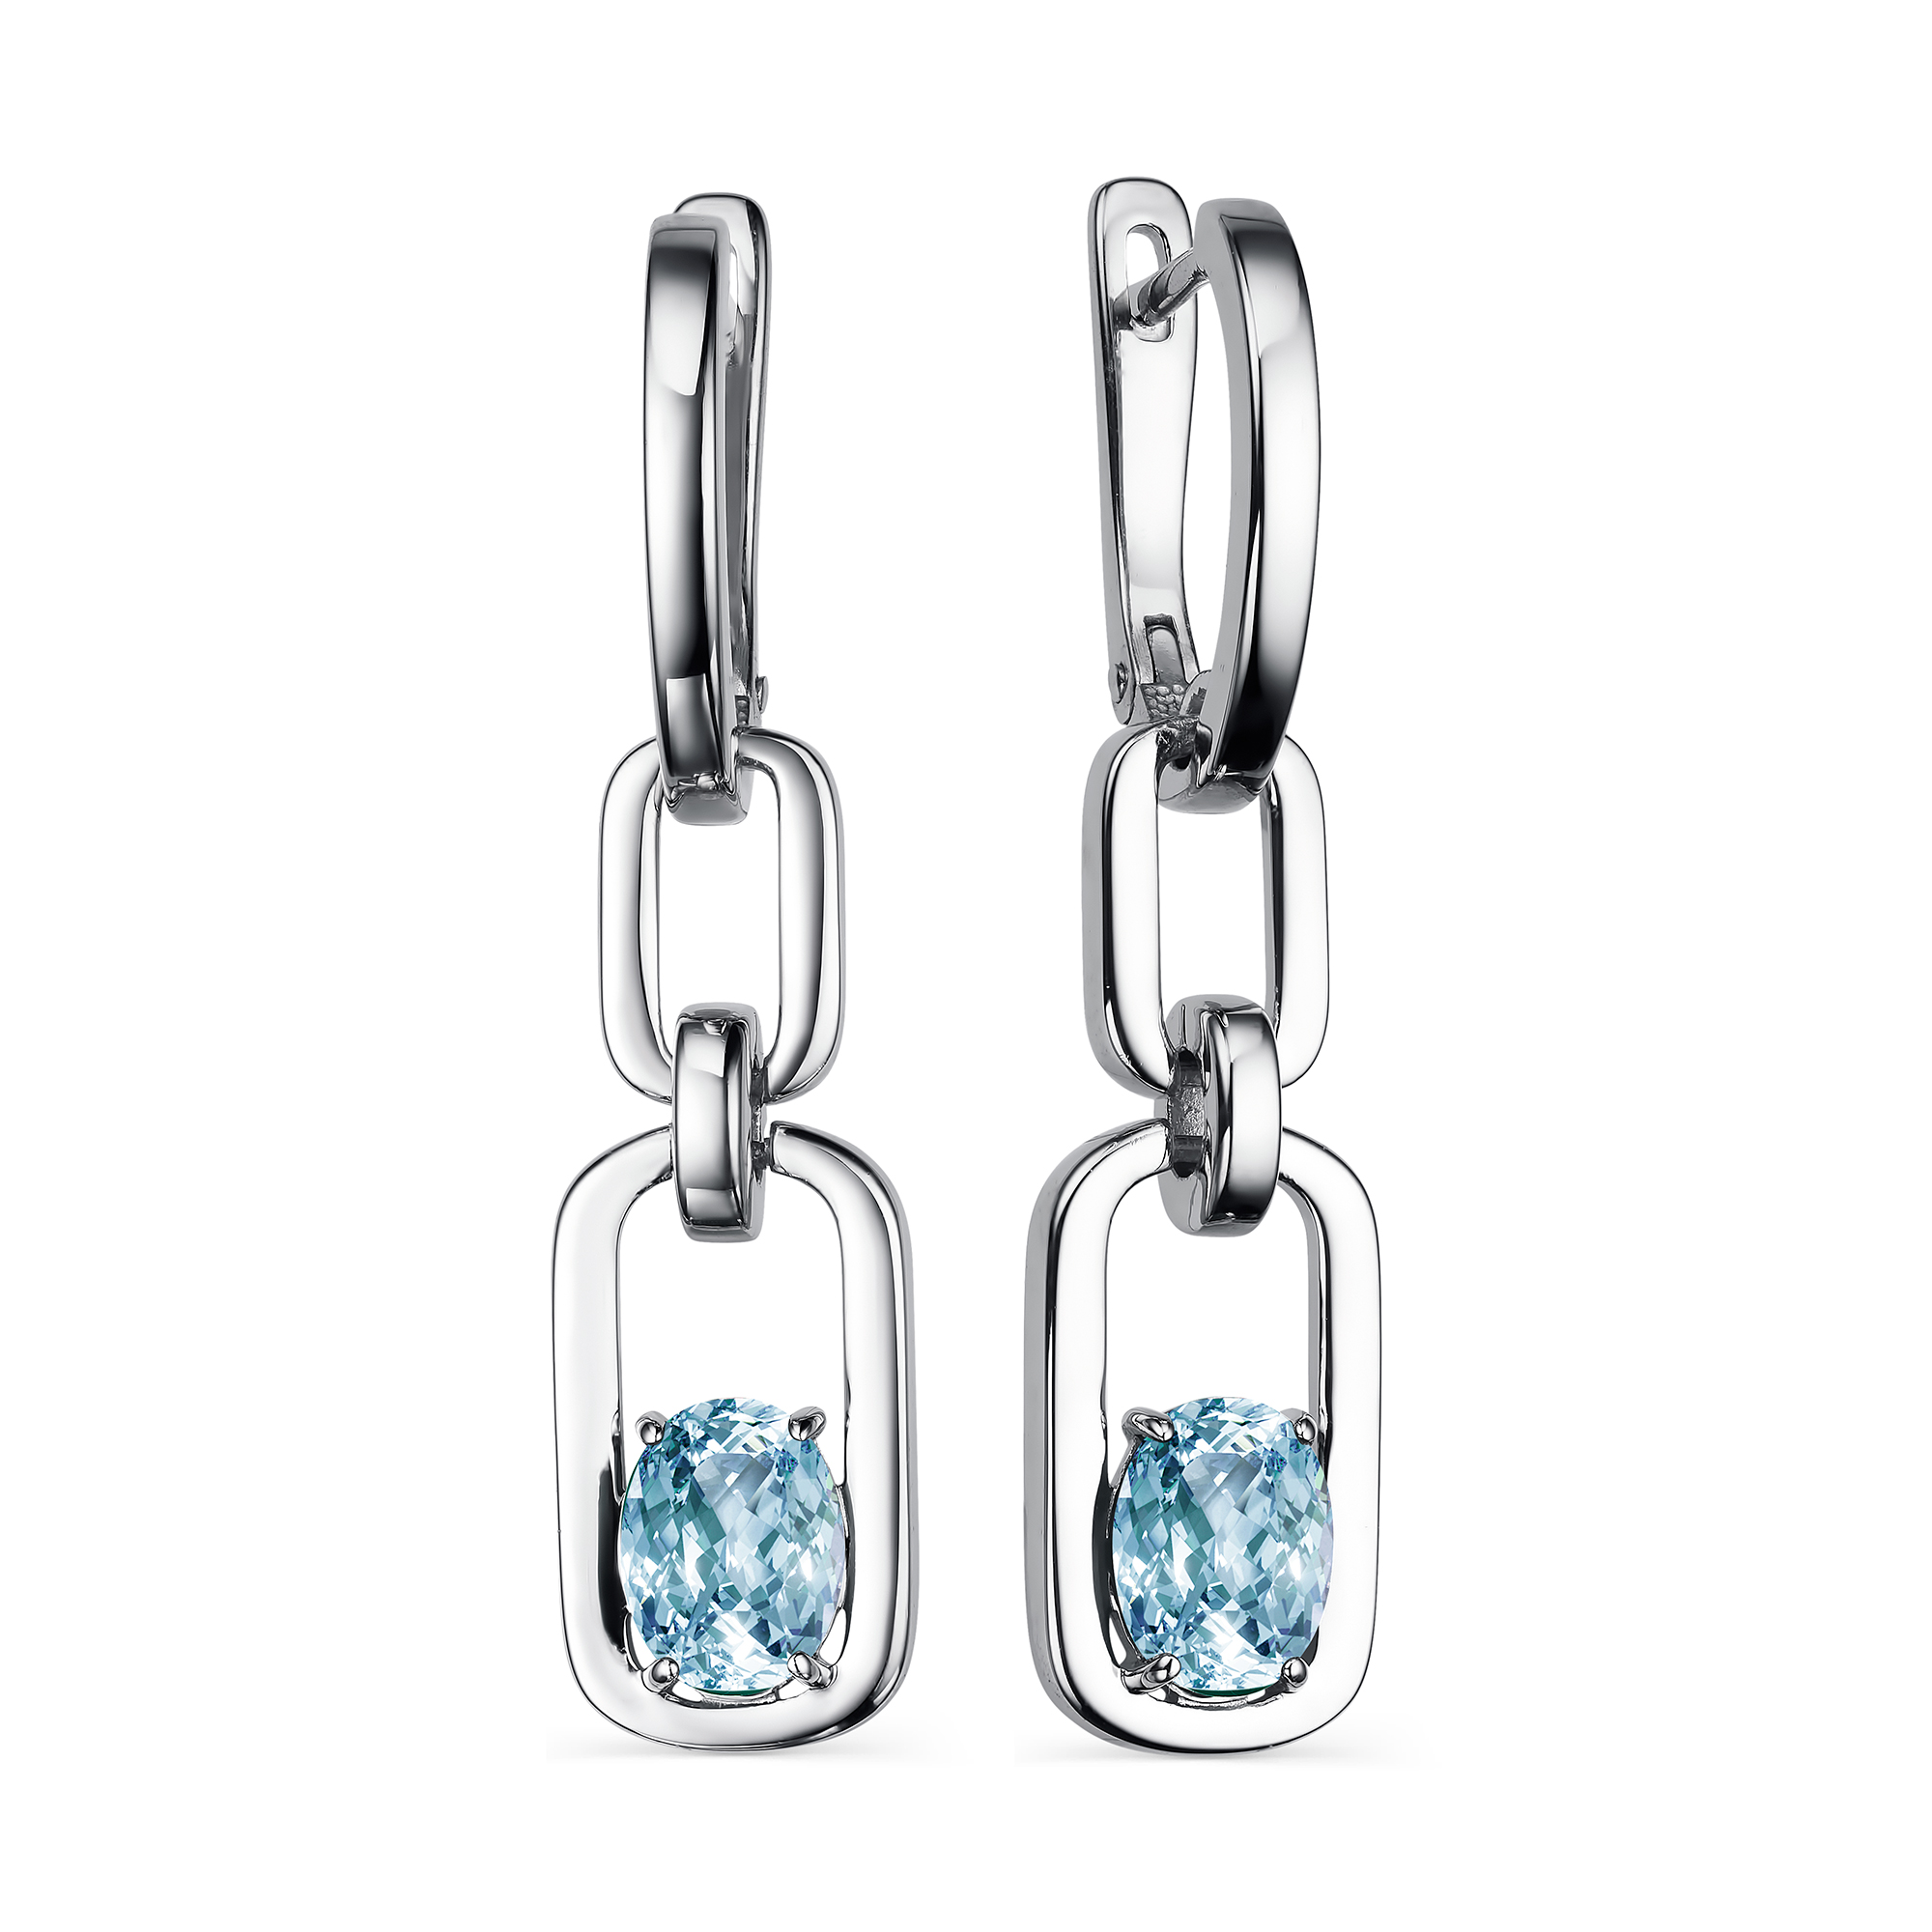 Серьги с английским замком из серебра серьги женские из серебра balex jewellery 2405936736 гранат топаз